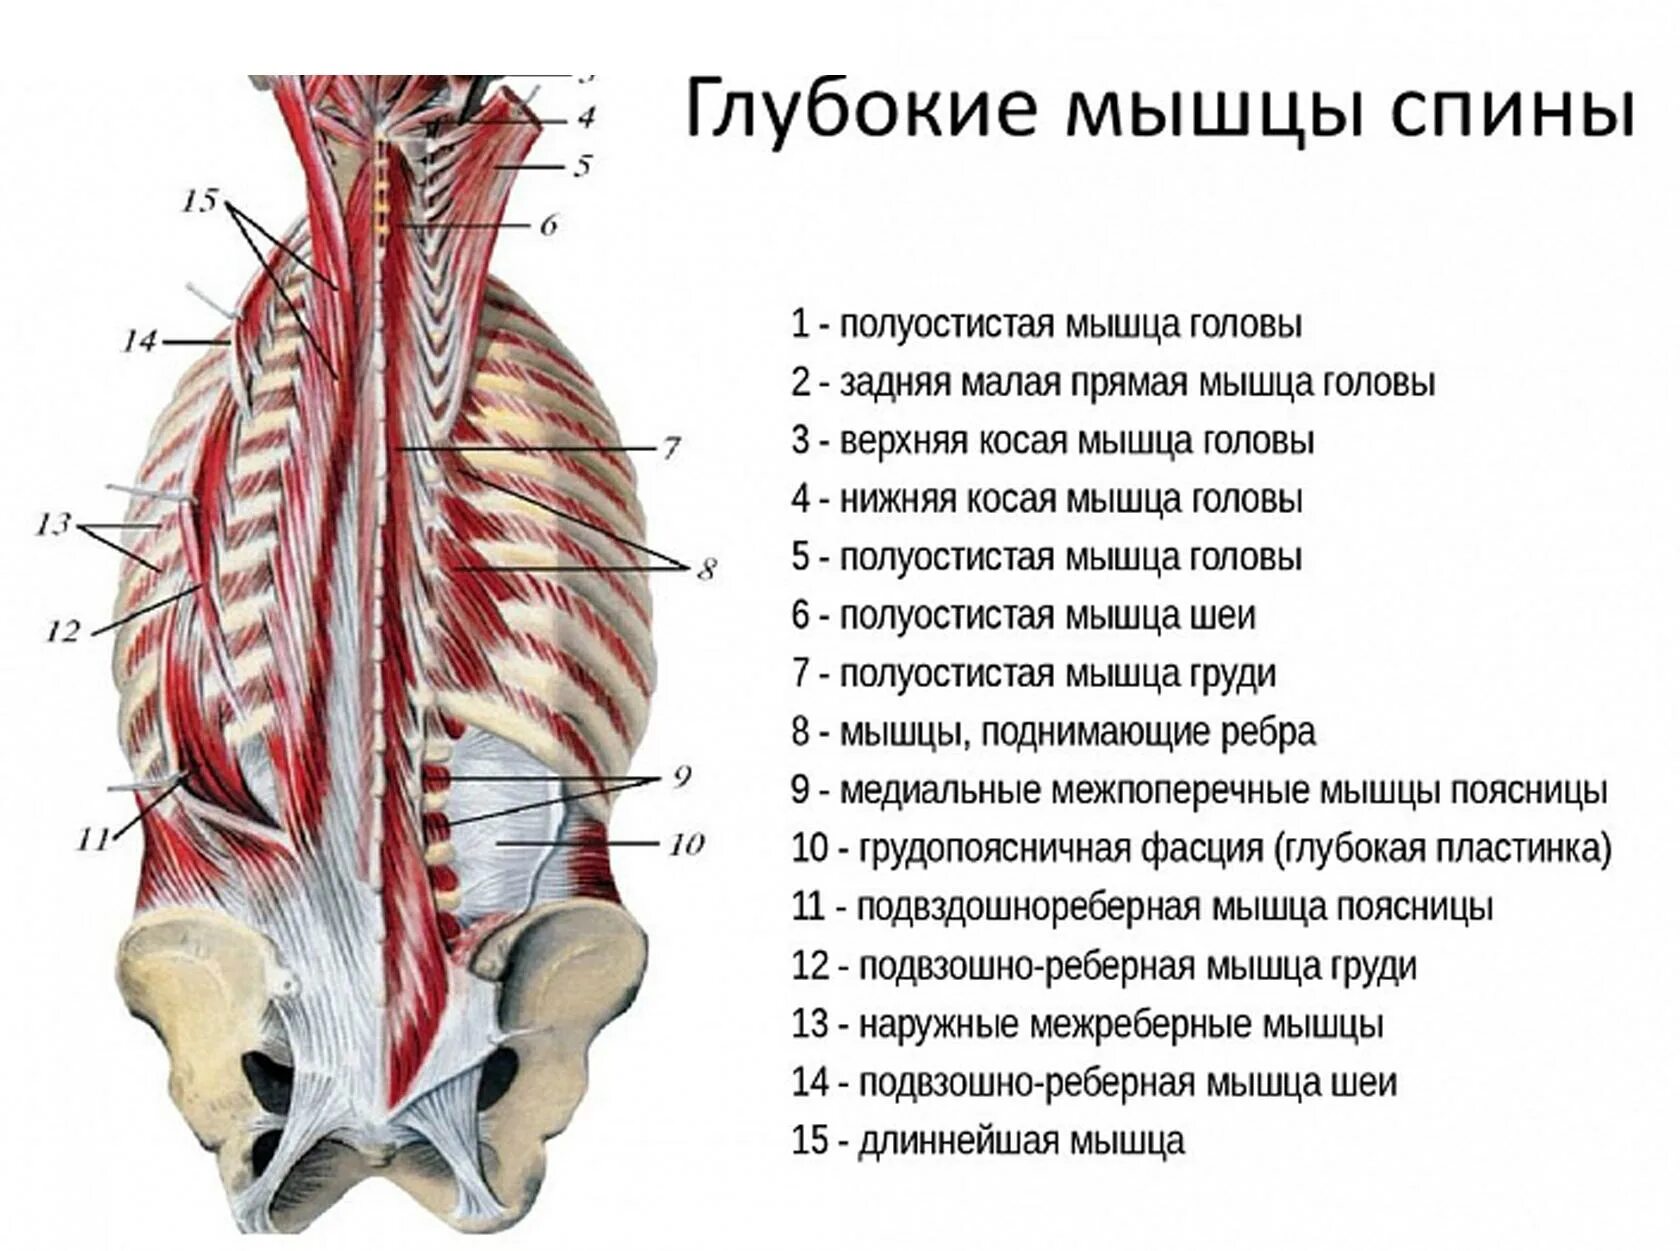 Мышцы спины поверхностные и глубокие слои анатомия. Поверхностный слой глубоких мышц спины. Мышцы спины второй глубокий слой.